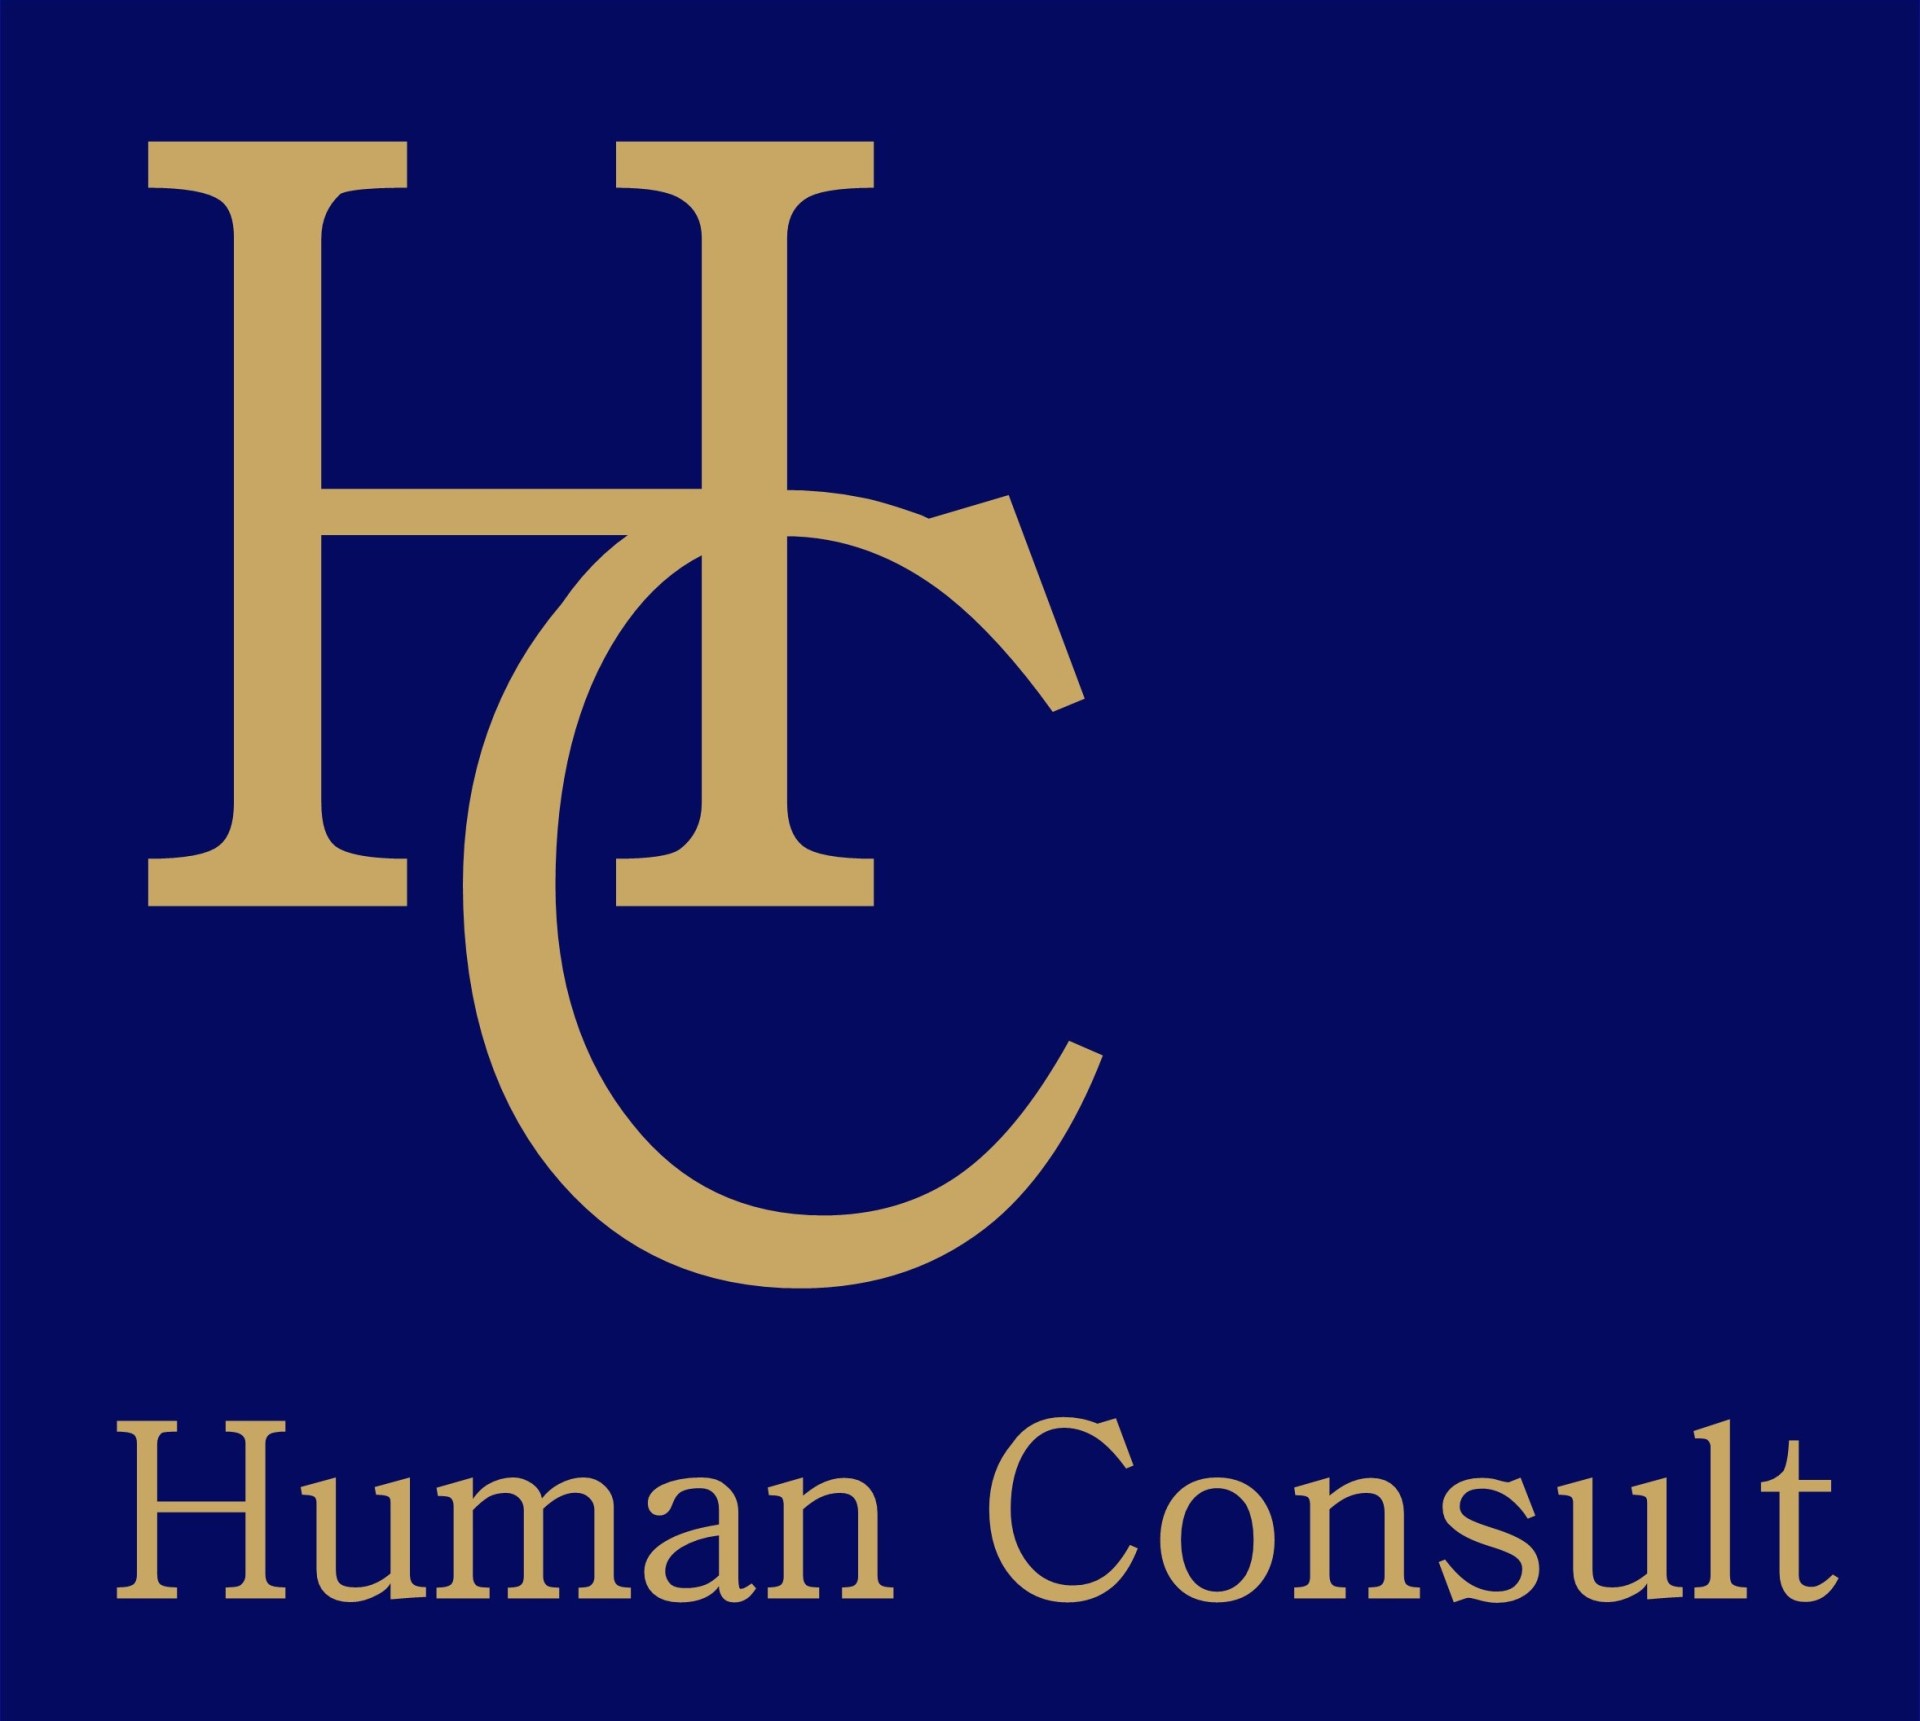 HC - Human Consult